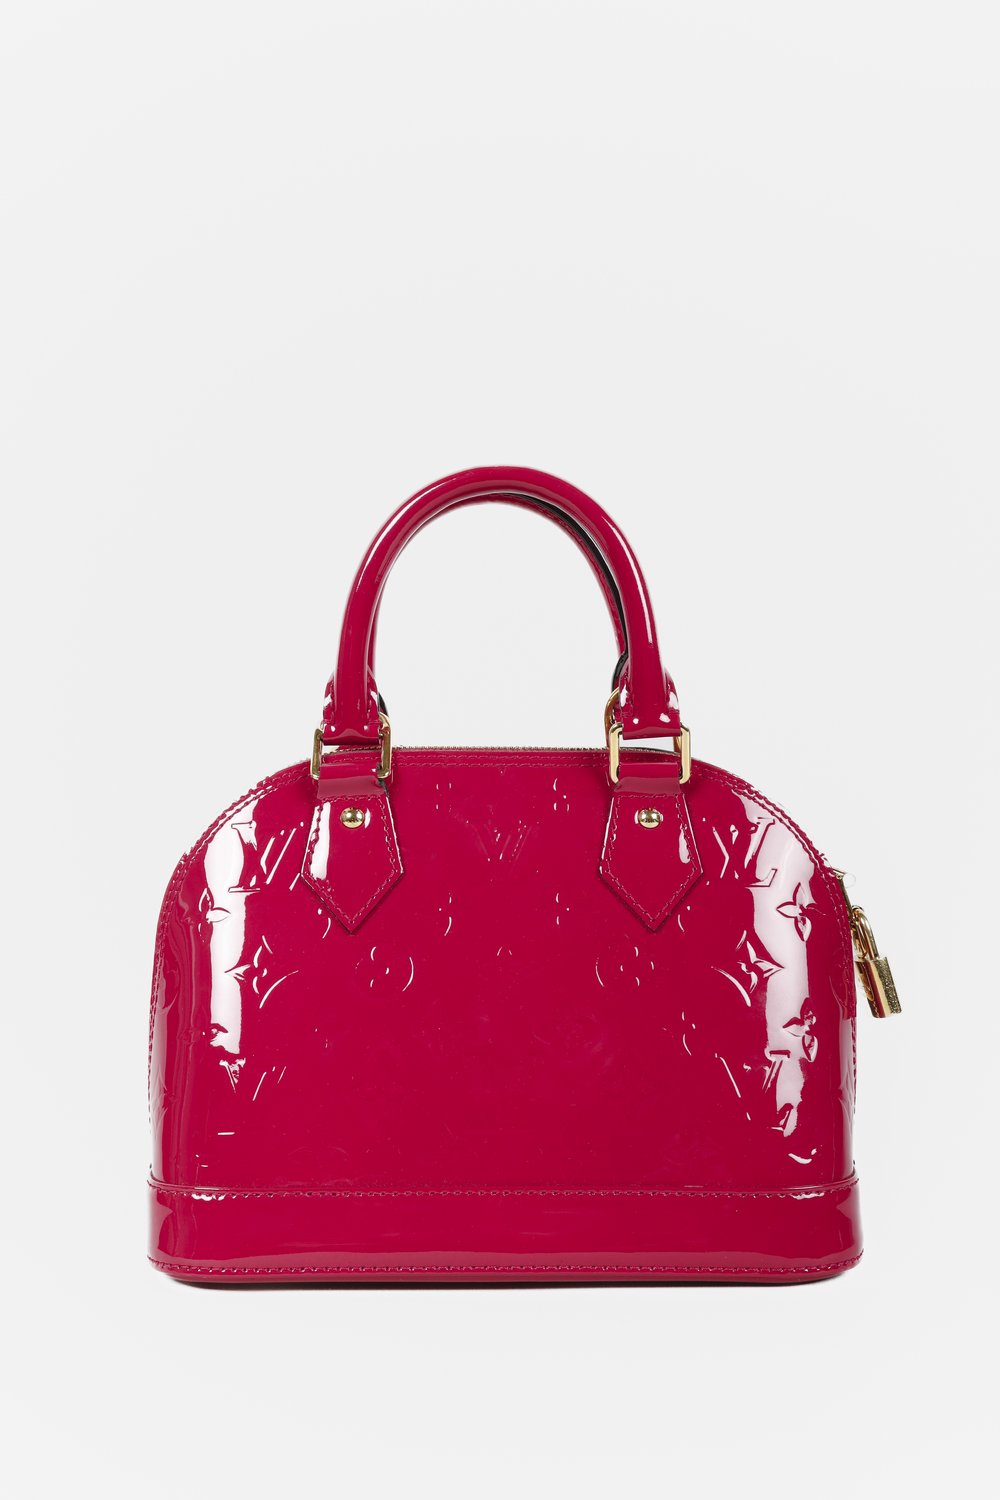 Louis Vuitton Monogram Vernis Magenta Alma PM bag + matching strap